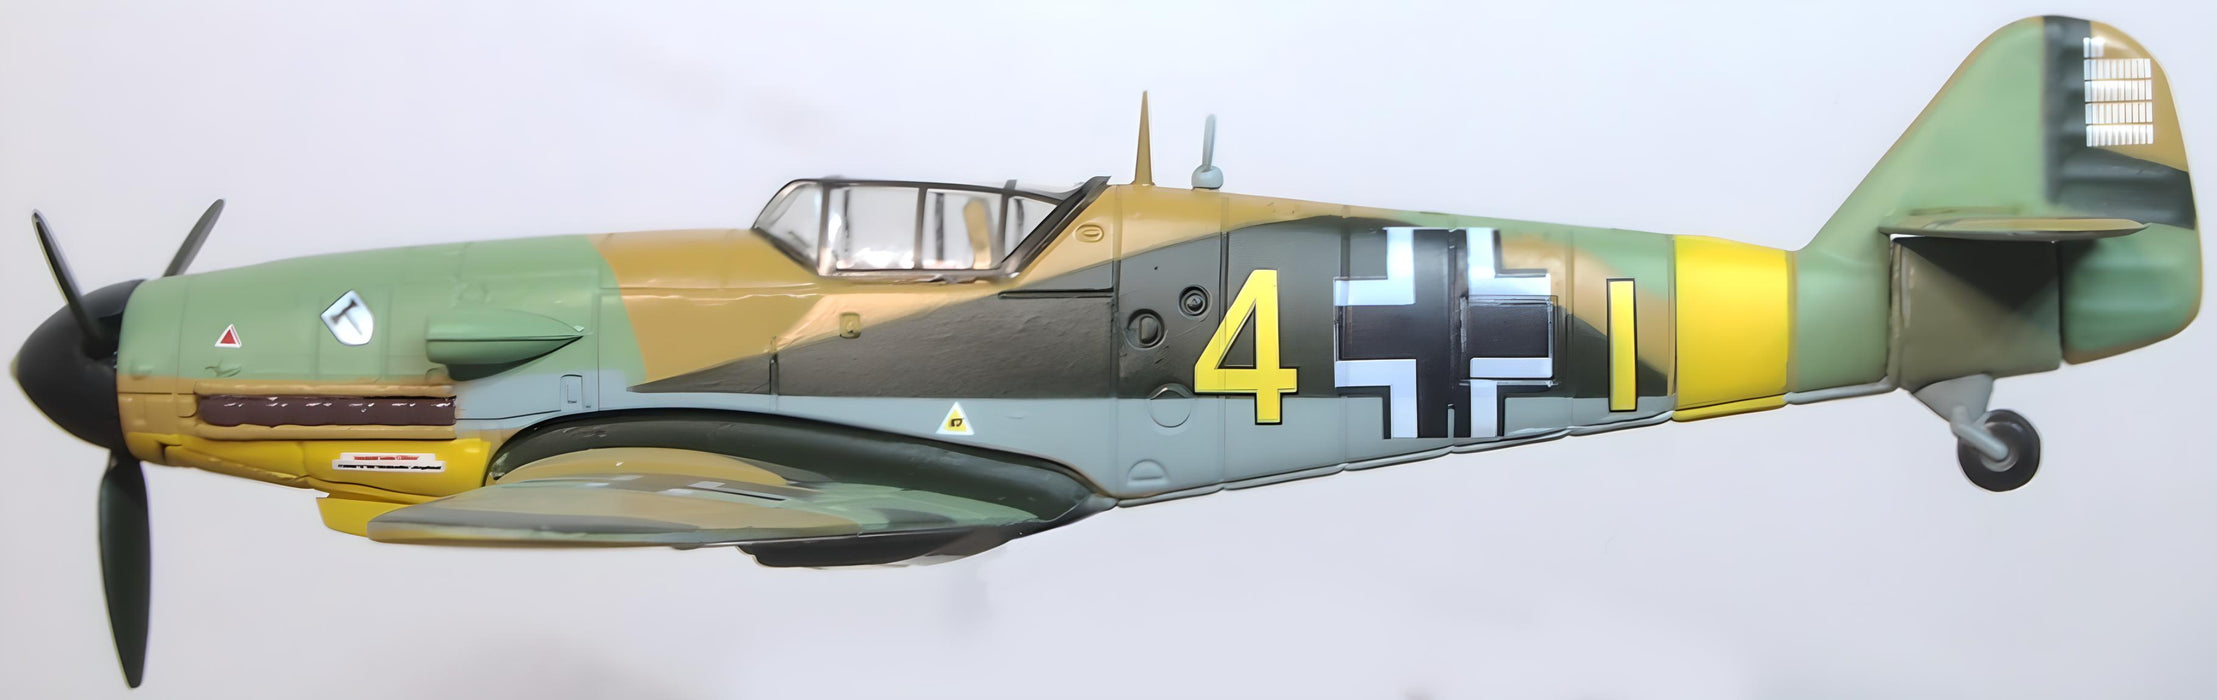 Messerschmitt-Bf-109F4/Trop-104-Eberhard-von-Boremsk No Swastika - 172 Scale AC114S left